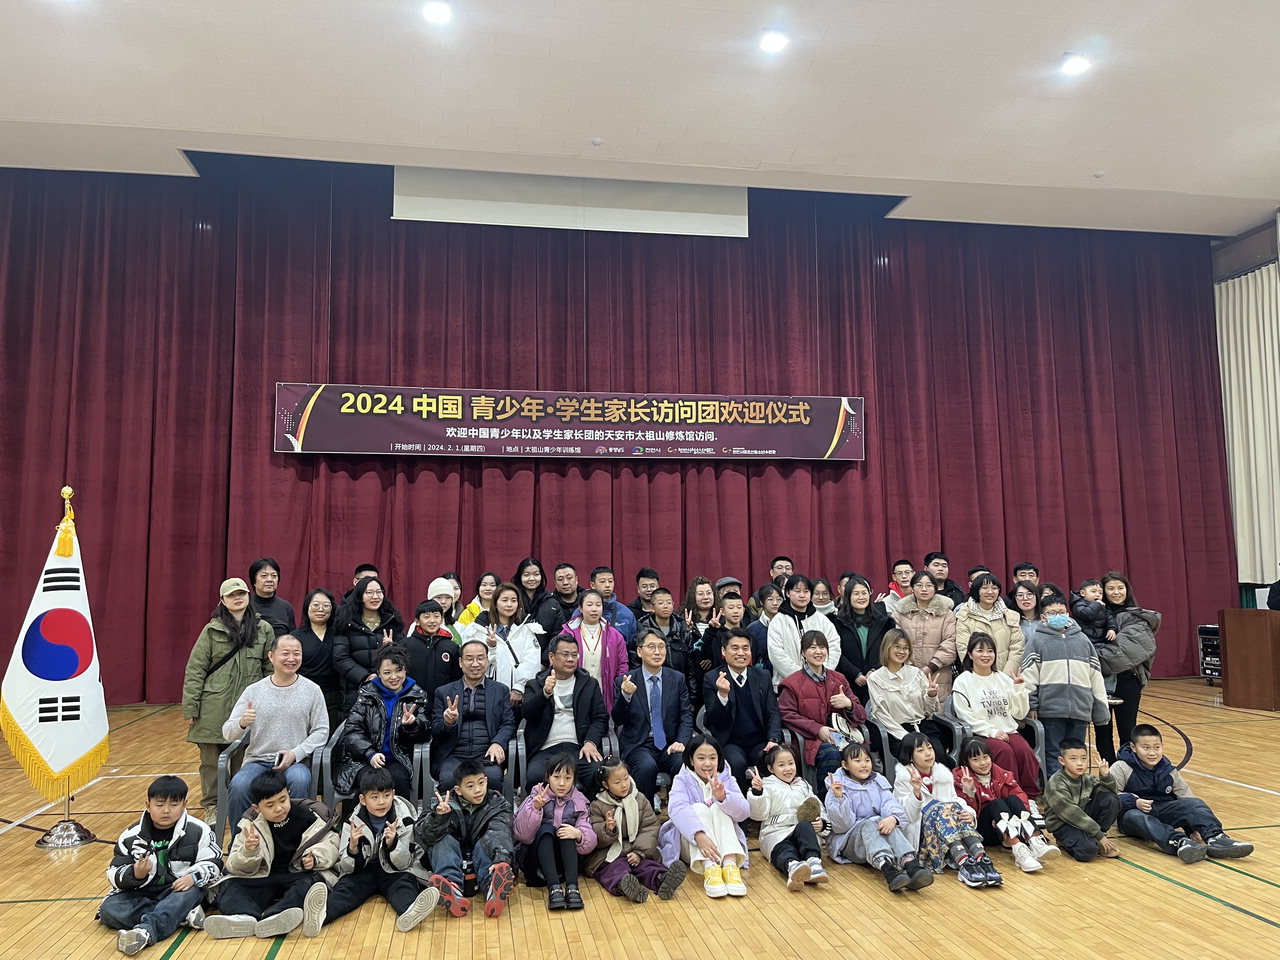 중국의 문화예술학교 학생과 학부모 60여 명이 지난 1일부터 2일까지 이틀간 다양한 문화체험 활동을 체험하고 있다. / 천안시